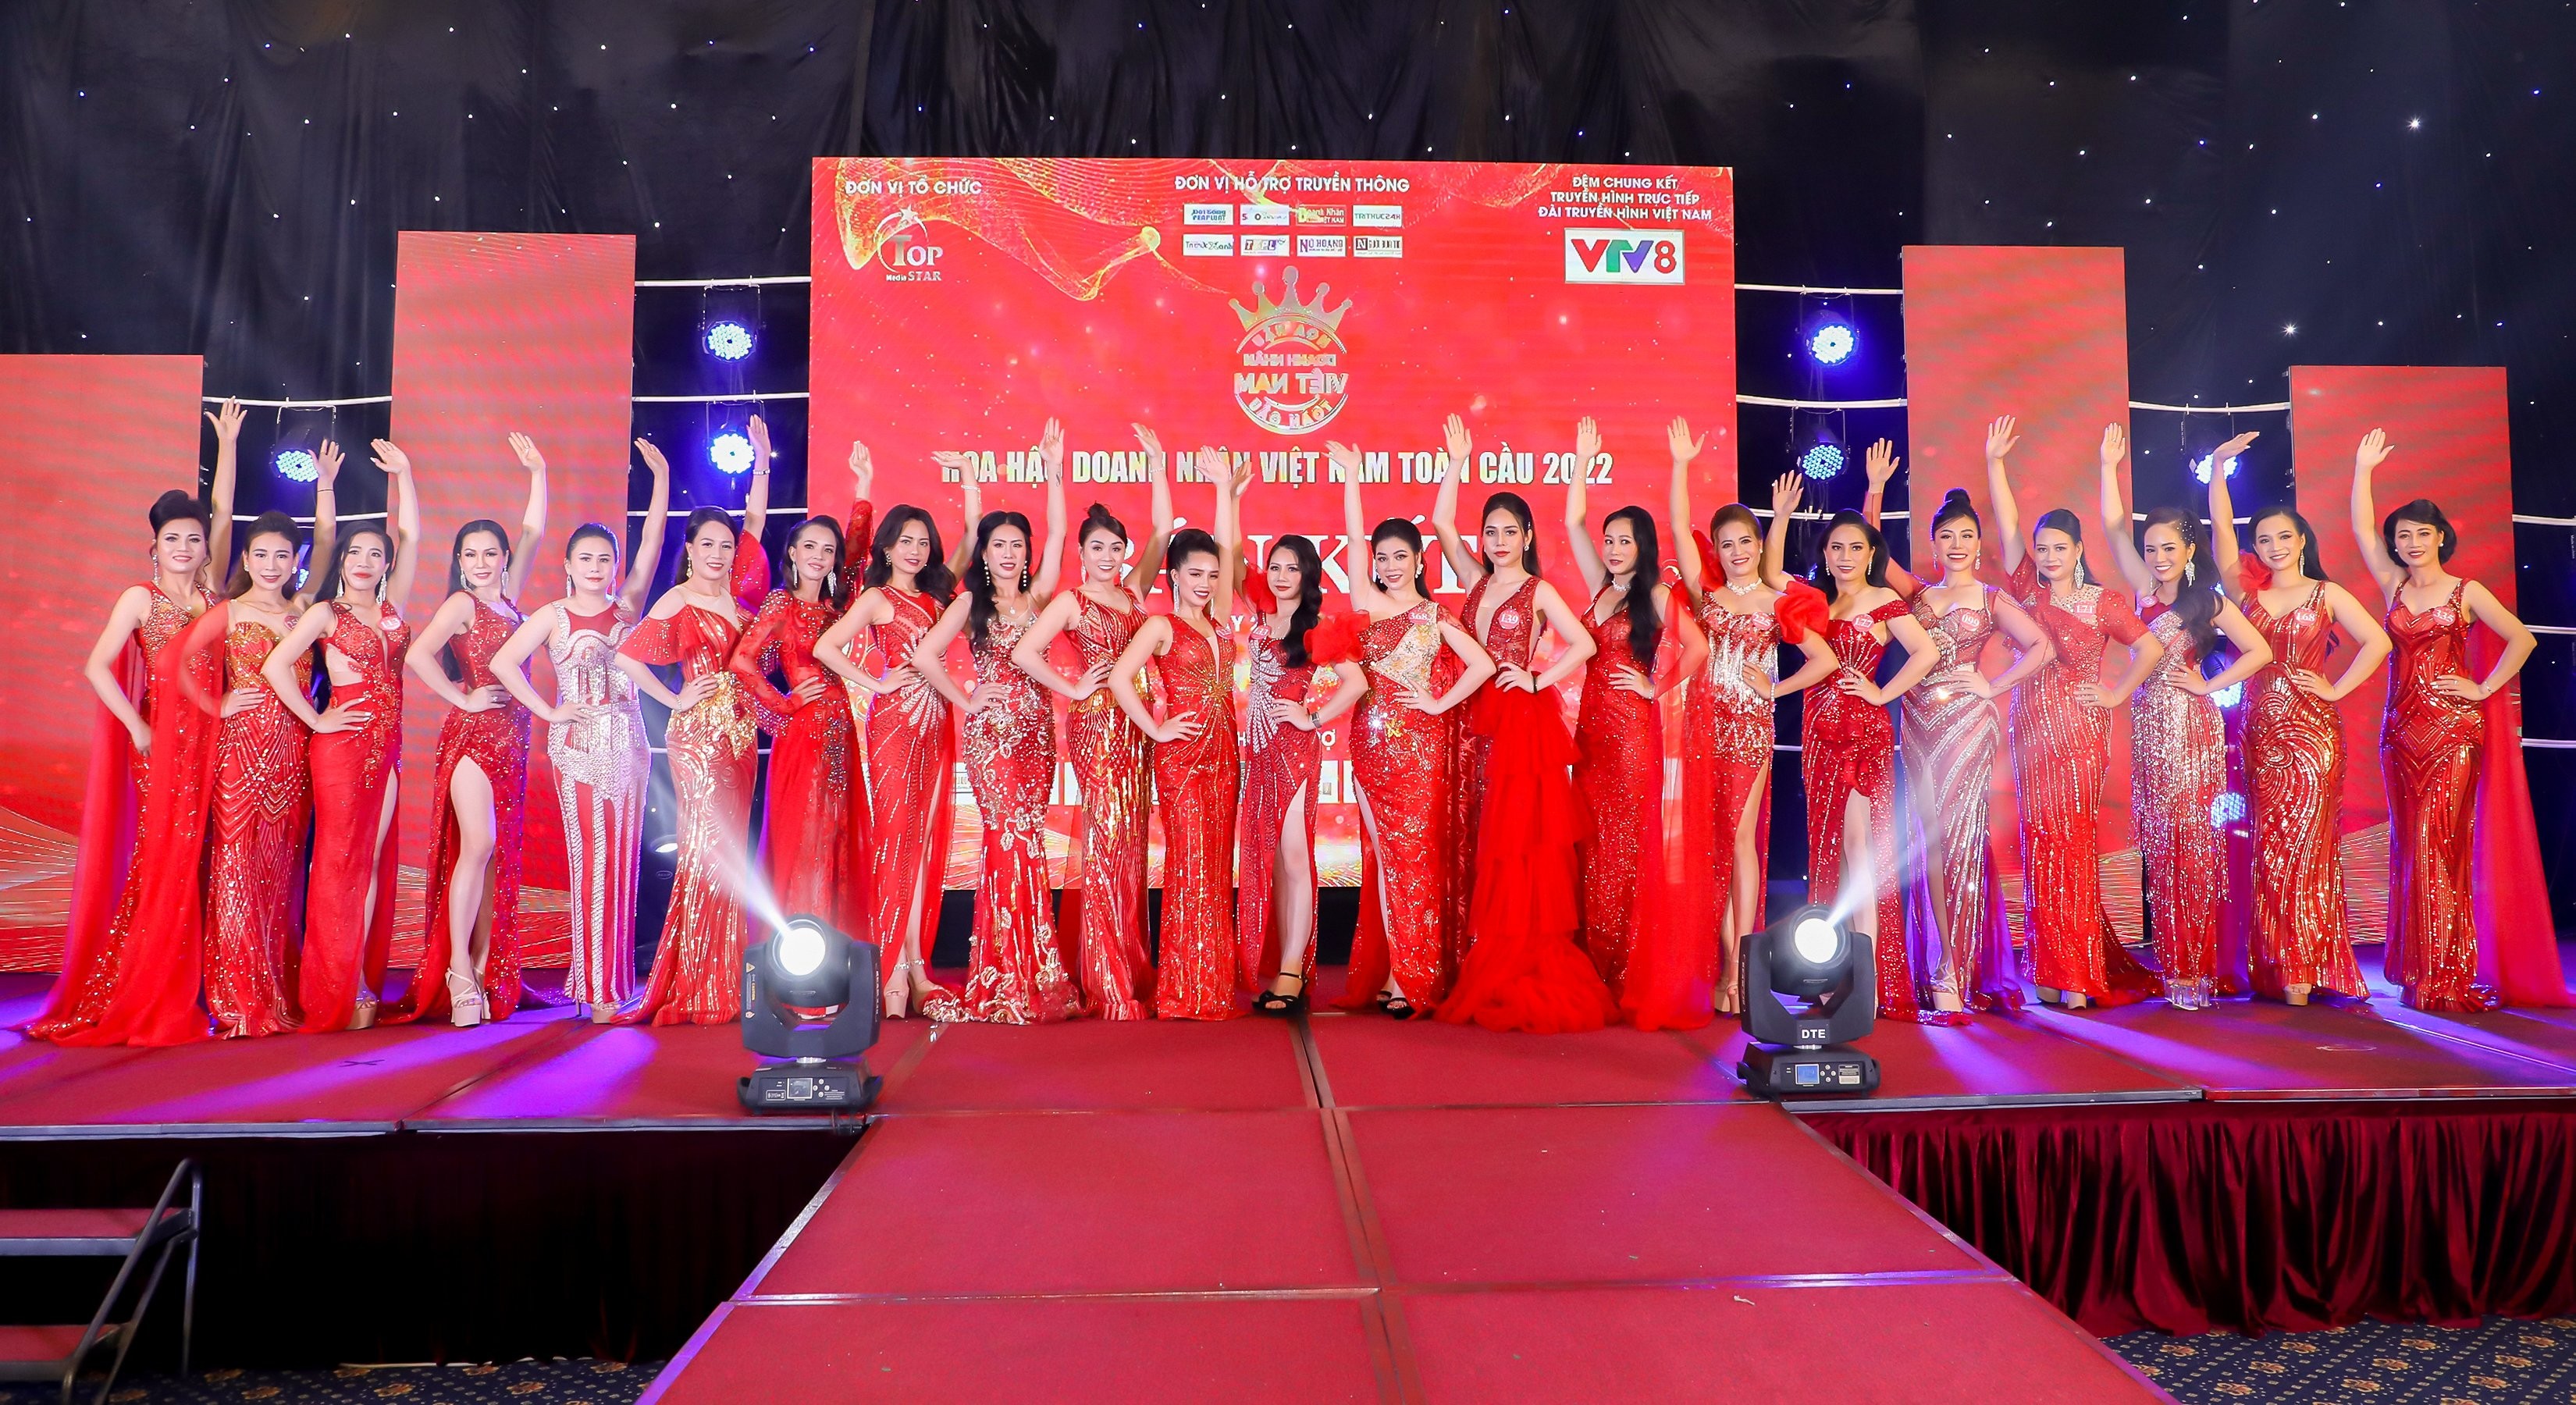 Lộ diện dàn thí sinh bước vào chung kết Hoa hậu Doanh nhân Việt Nam Toàn cầu 2022